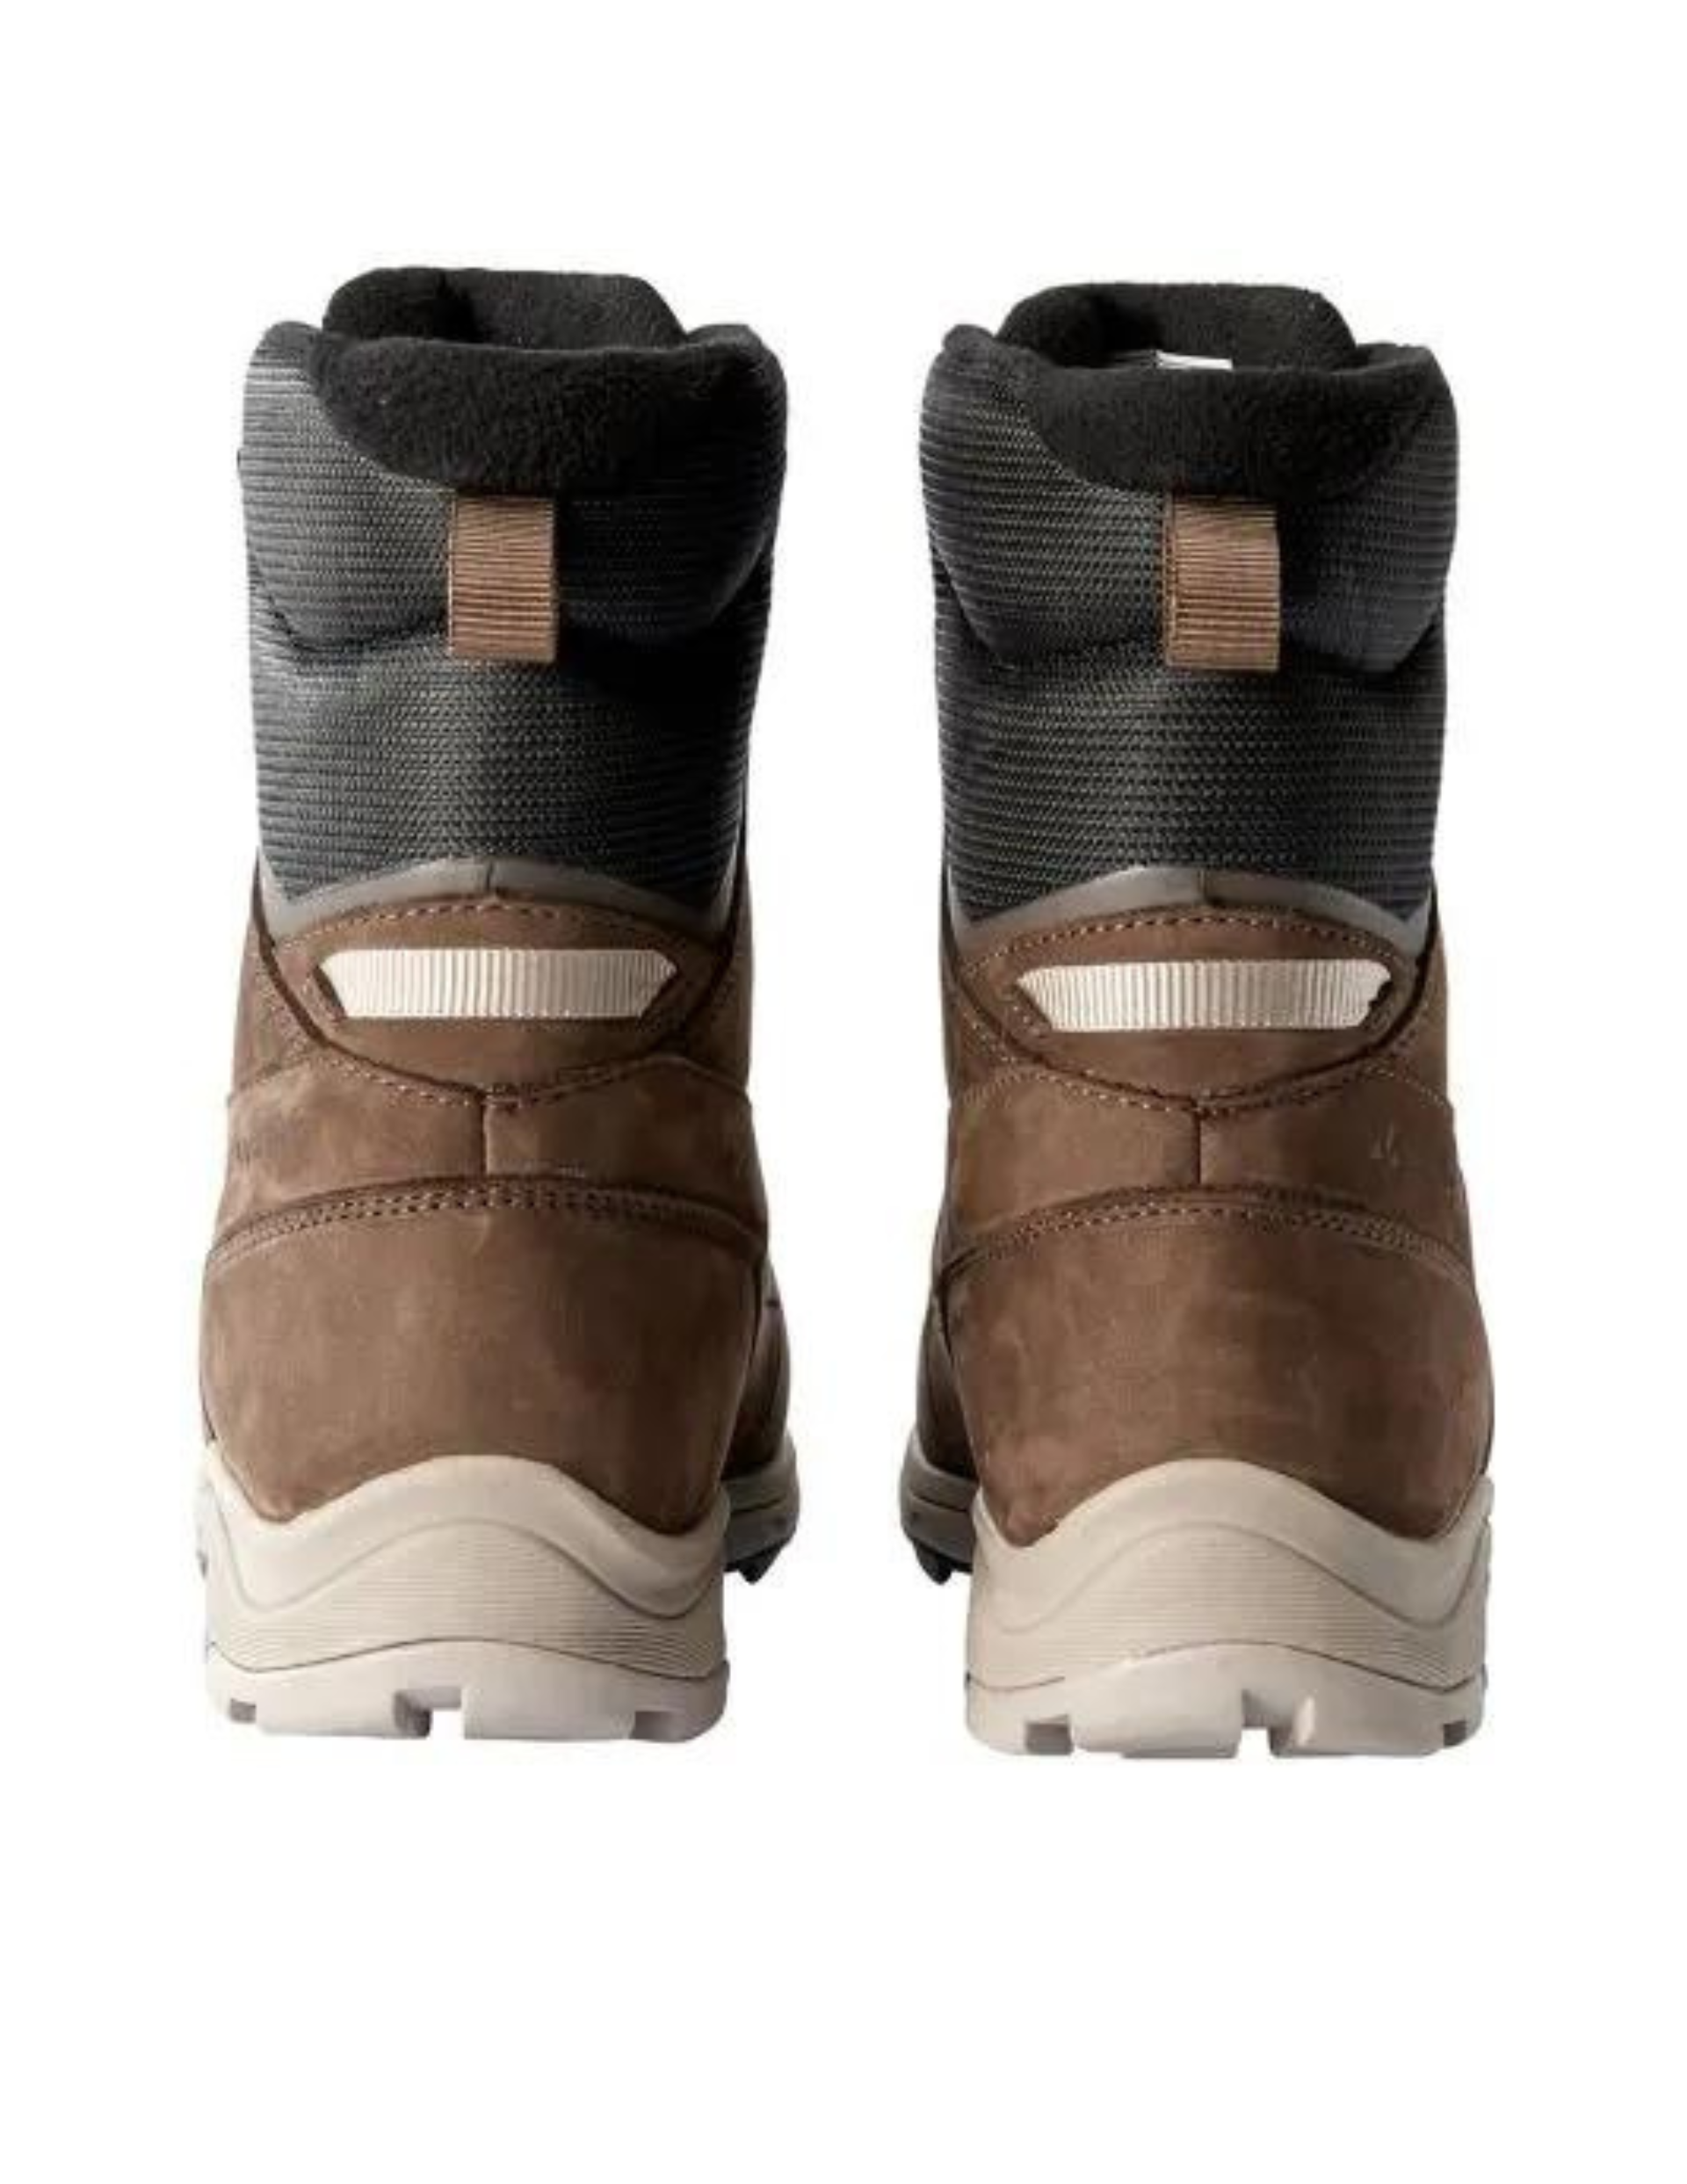 Chaussures de Rando Hiver Vaude Core STX Homme